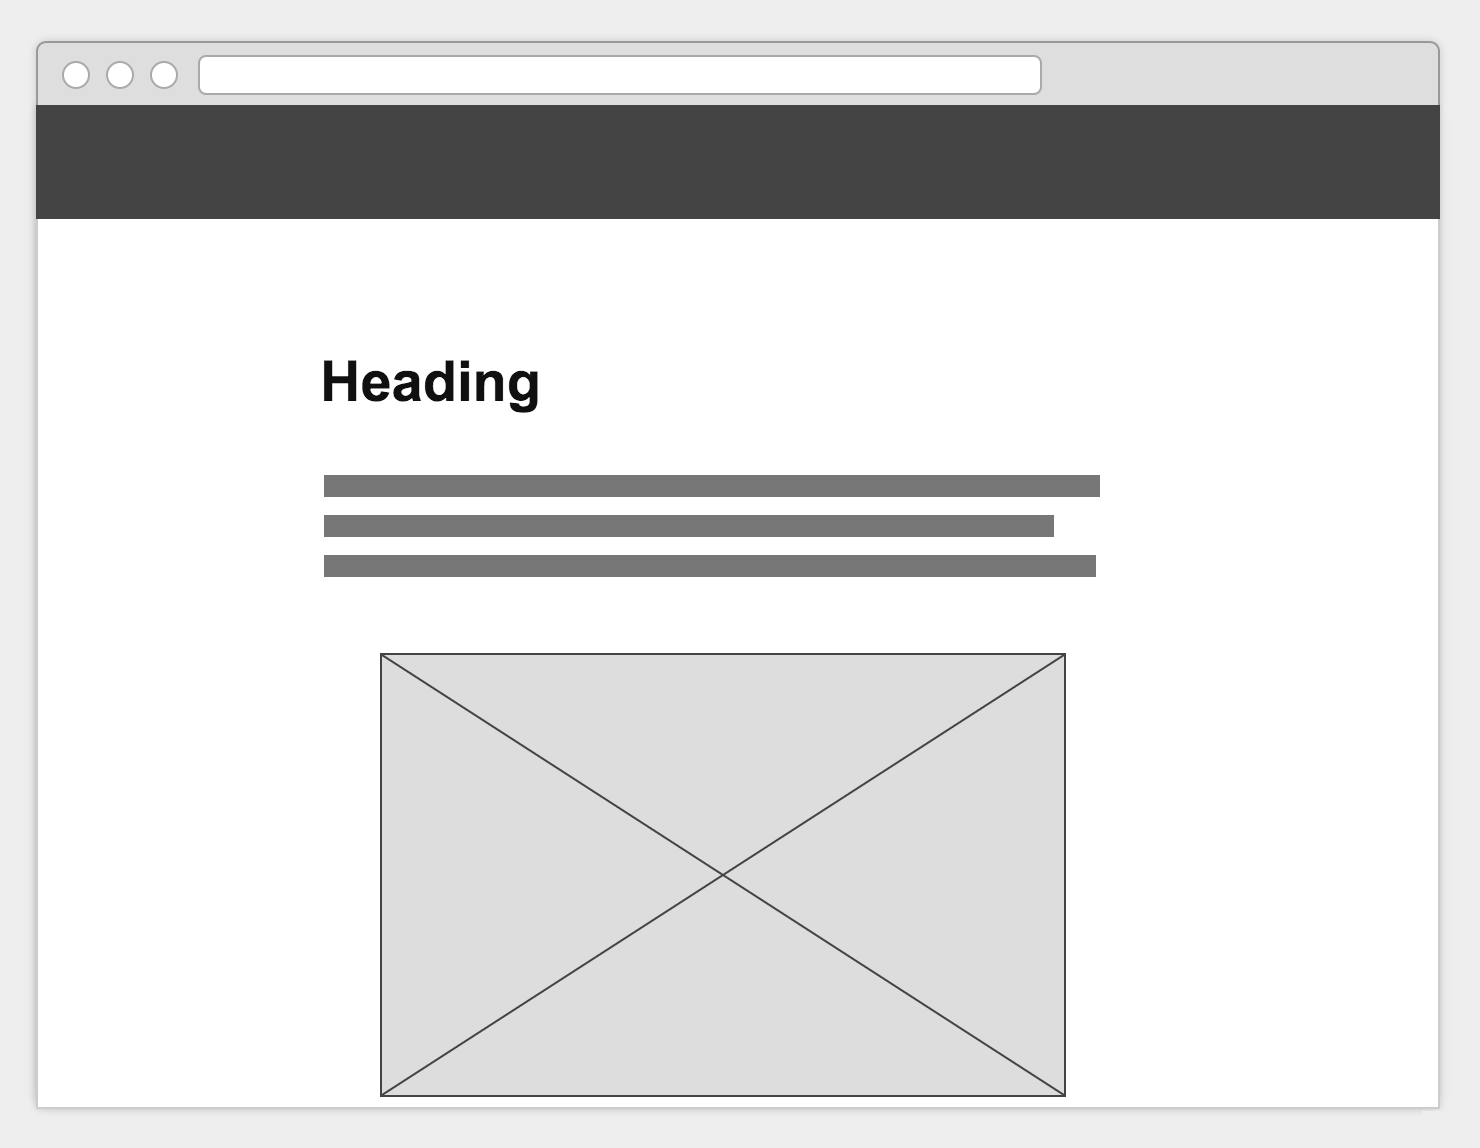 ヘッダー (ナビゲーションバー) が固定表示されたウェブページのイメージ